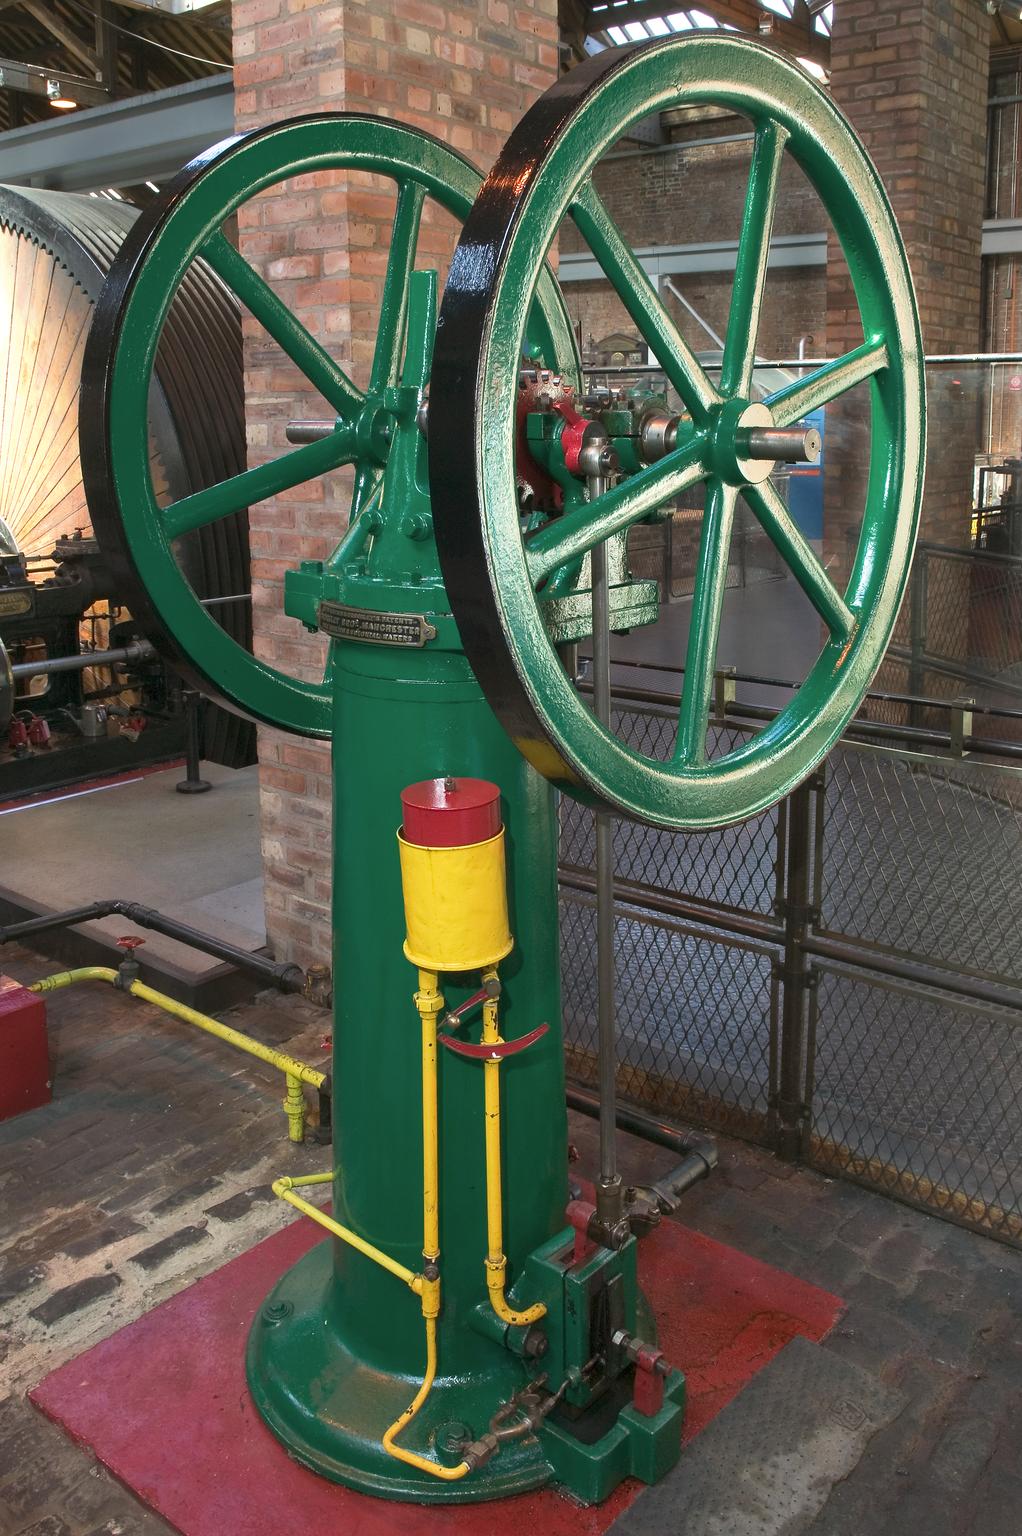 A 19th century steam engine